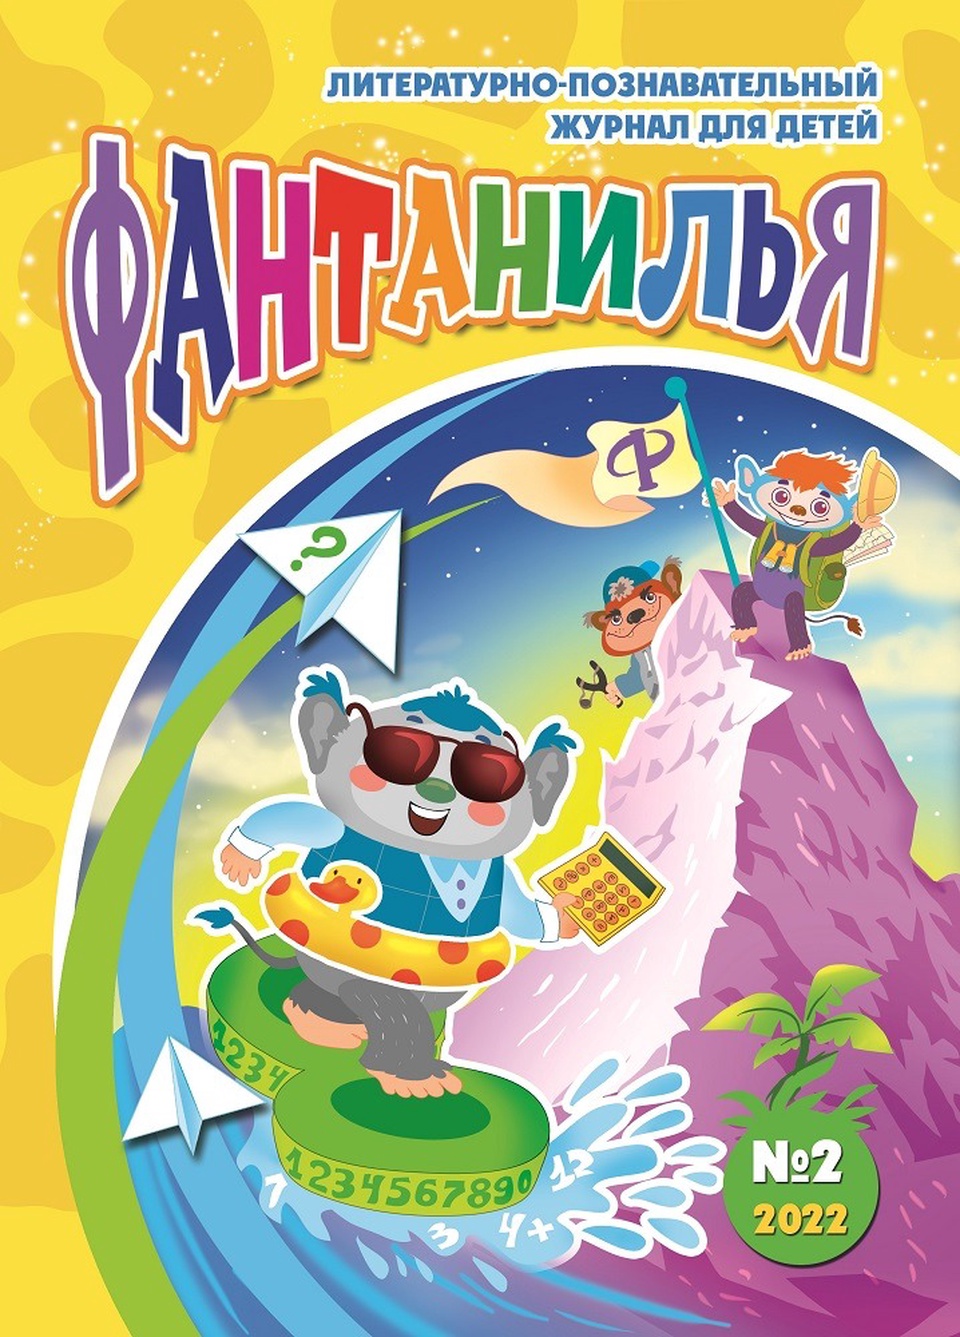 Литературно-познавательный журнал для детей «Фантанилья», выпуск № 2 - 200 ₽, заказать онлайн.